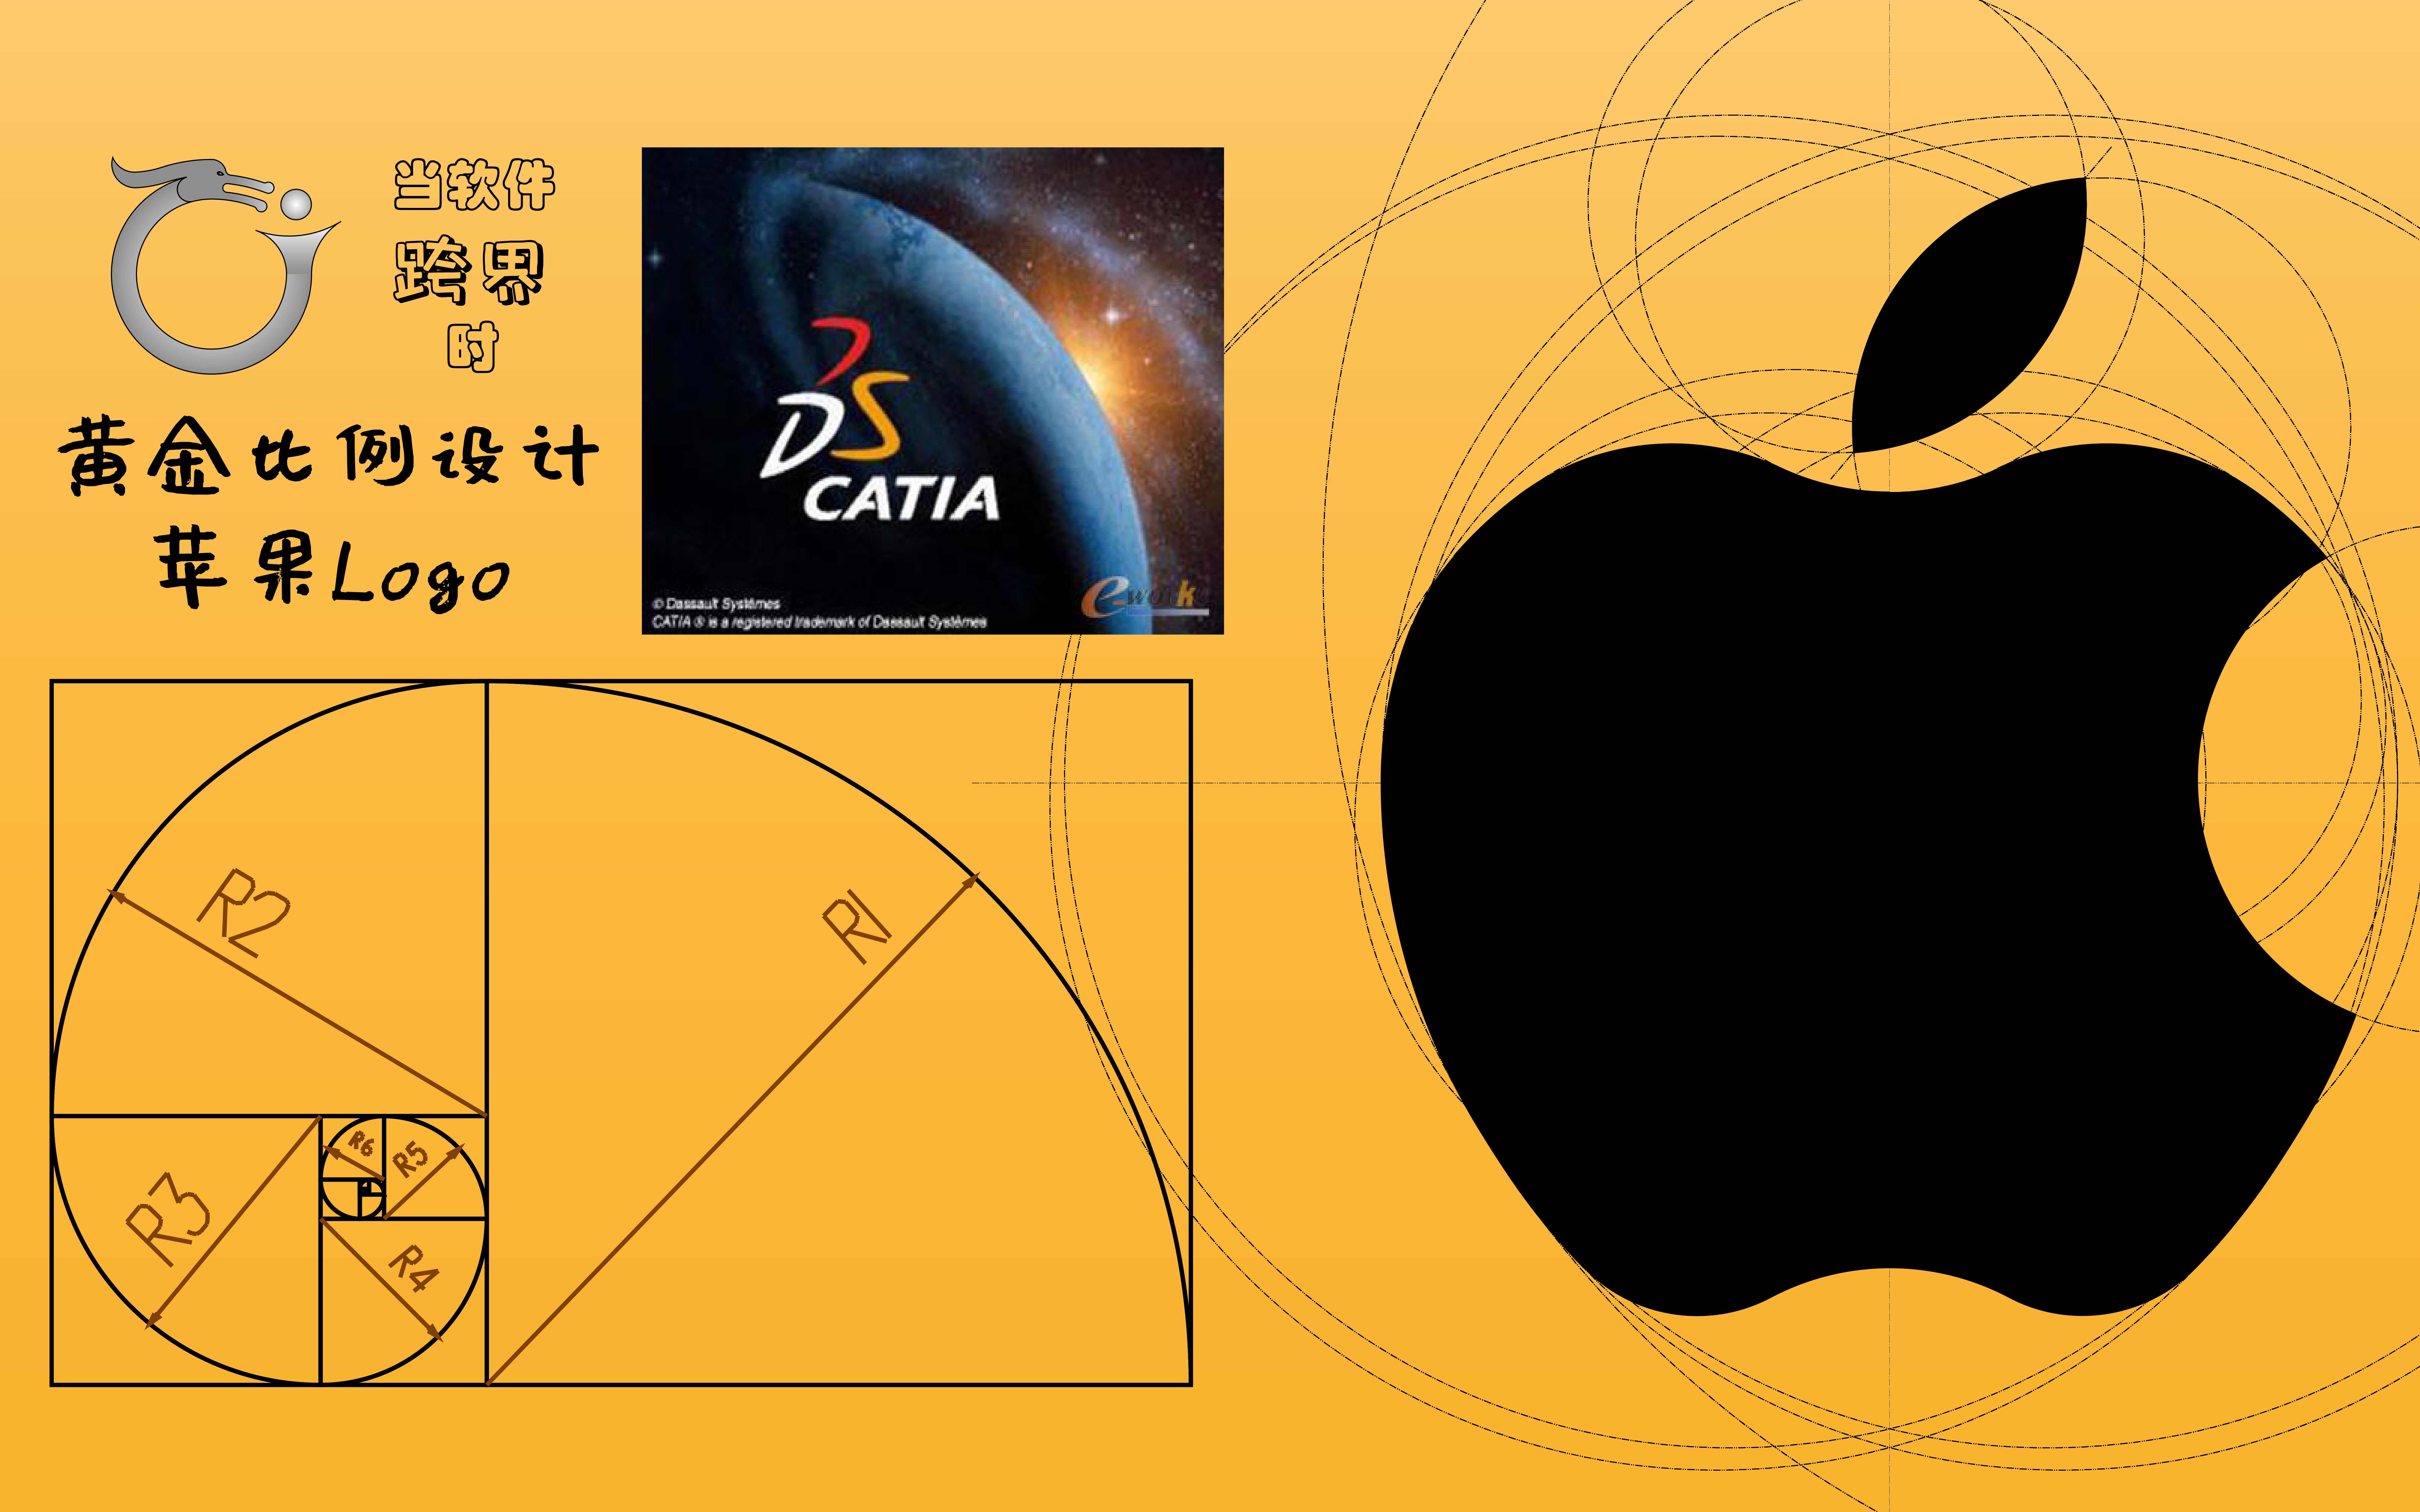 活动作品黄金比例设计苹果logo当软件跨界时